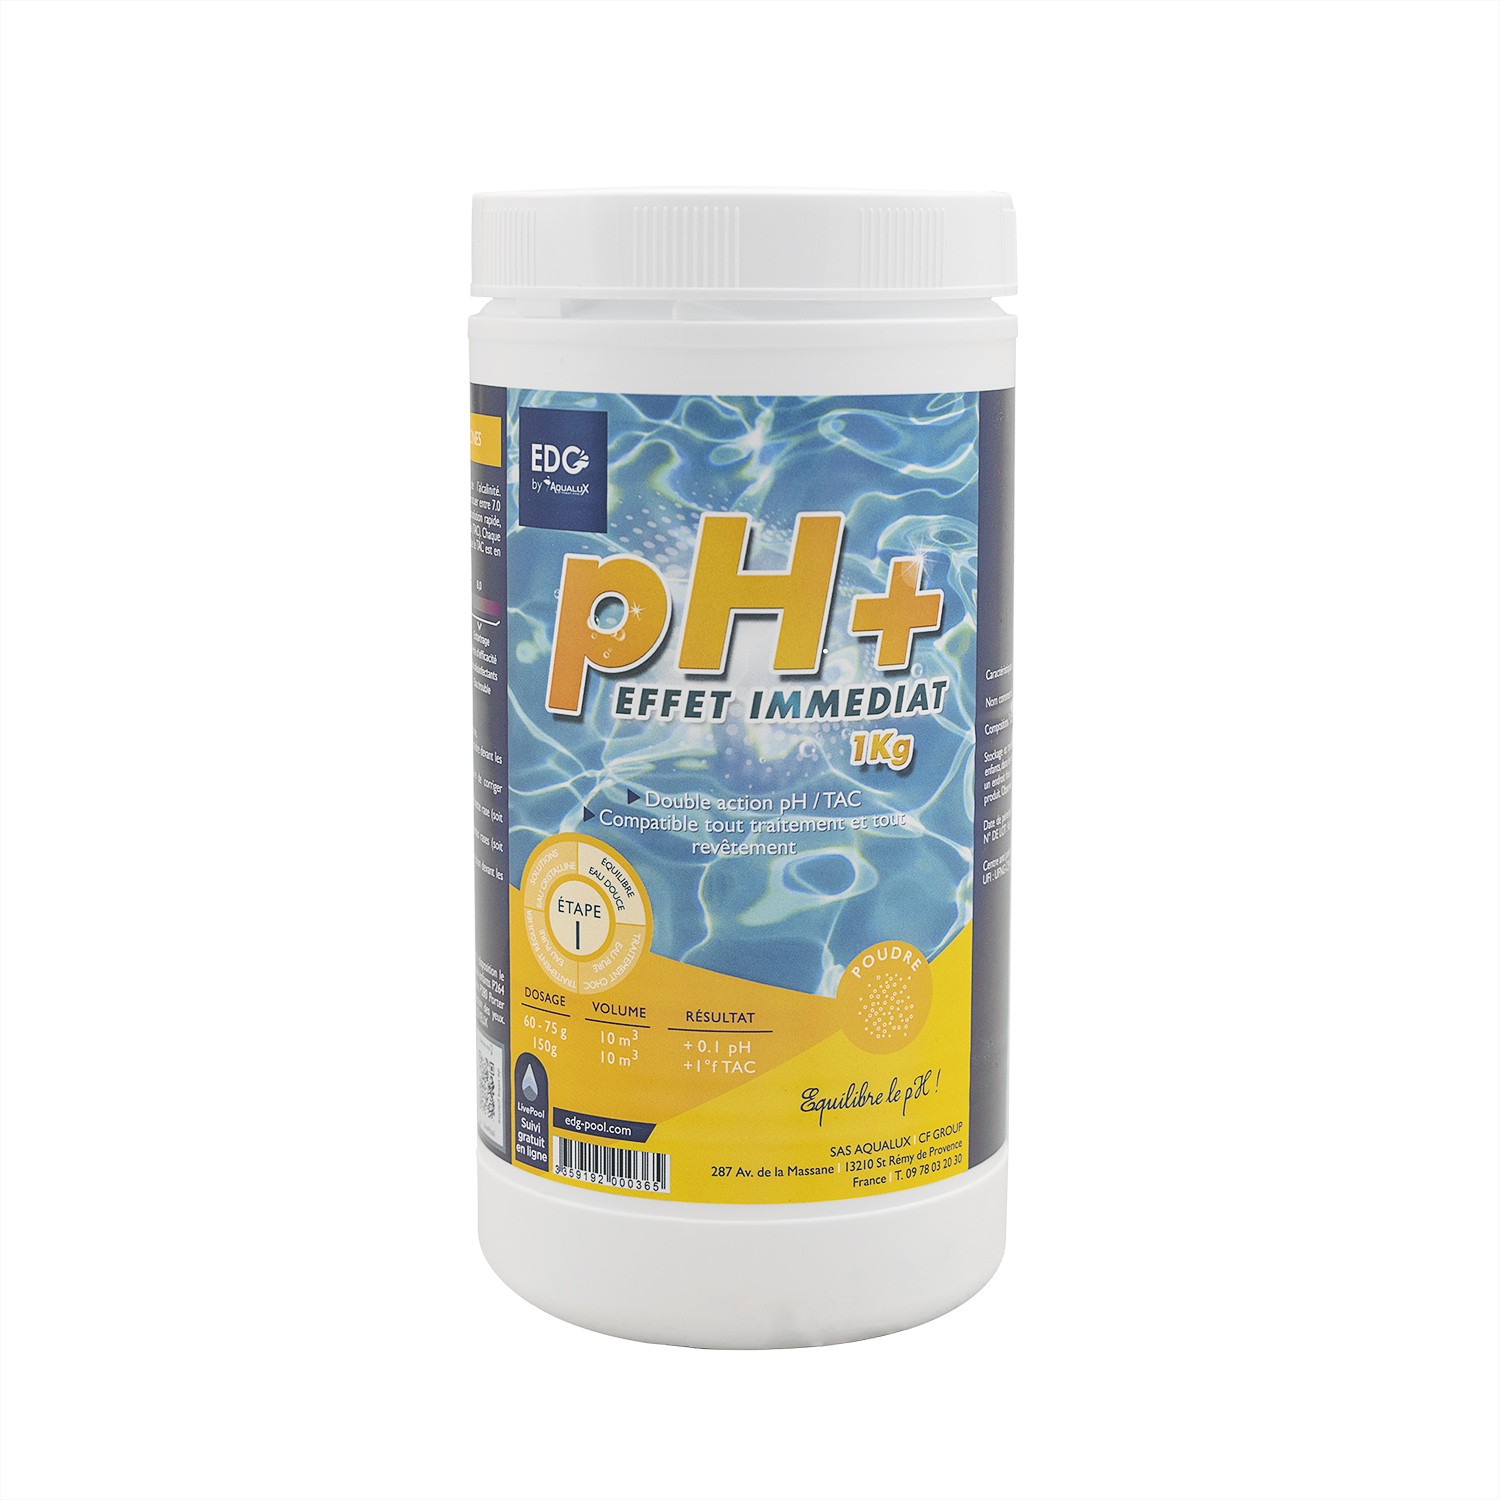 pH moins - Poudre - Seau de 5kg - Edg By Aqualux